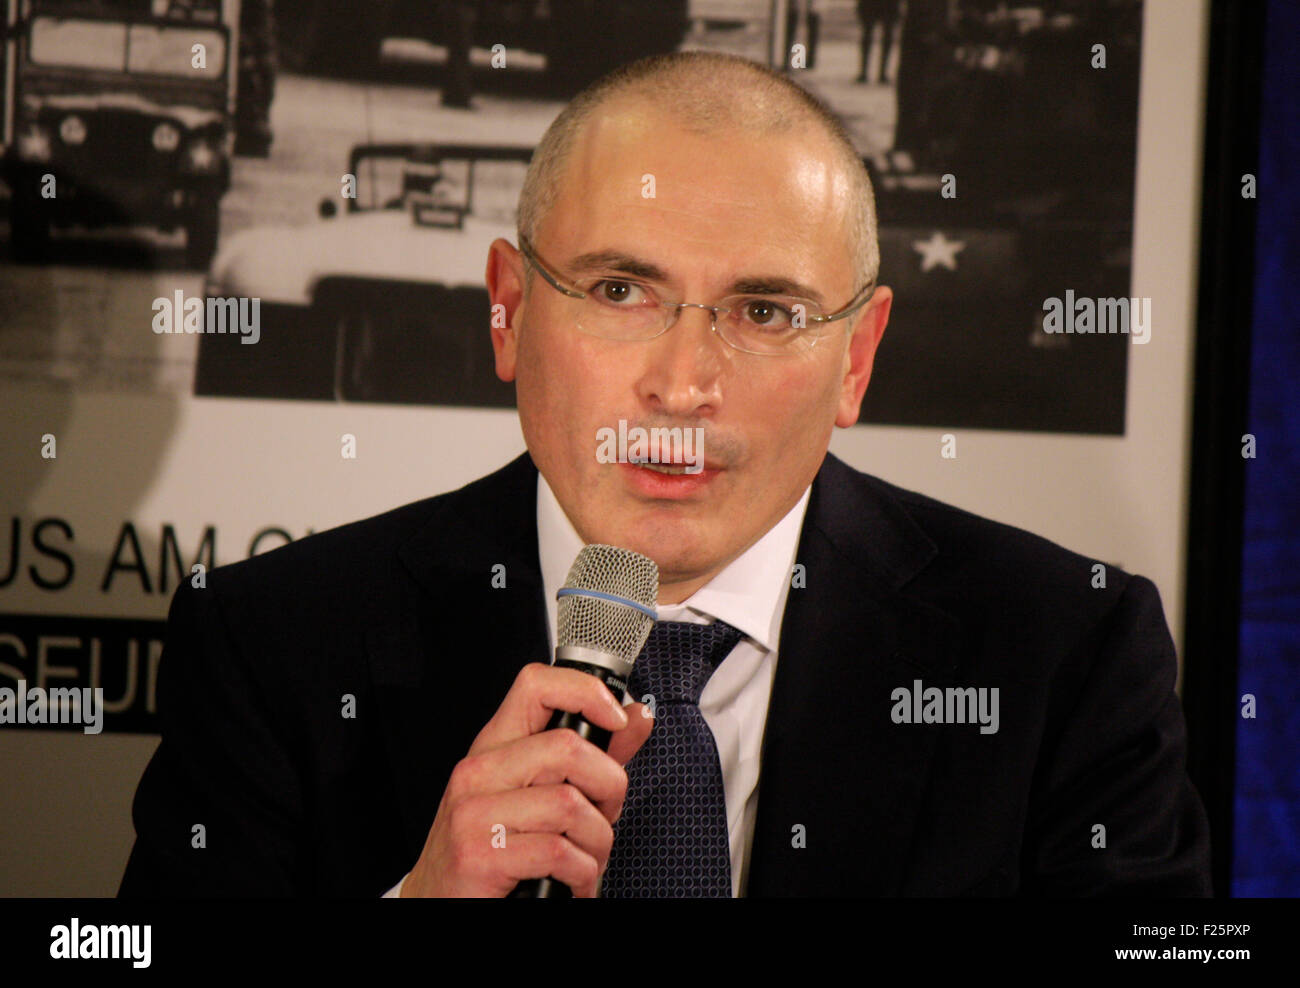 Michail Borissowitsch Chodorkowski - Pressekonferenz im Haus am Checkpoint Charlie, 22. Dezember 2013, Berlin. Stock Photo